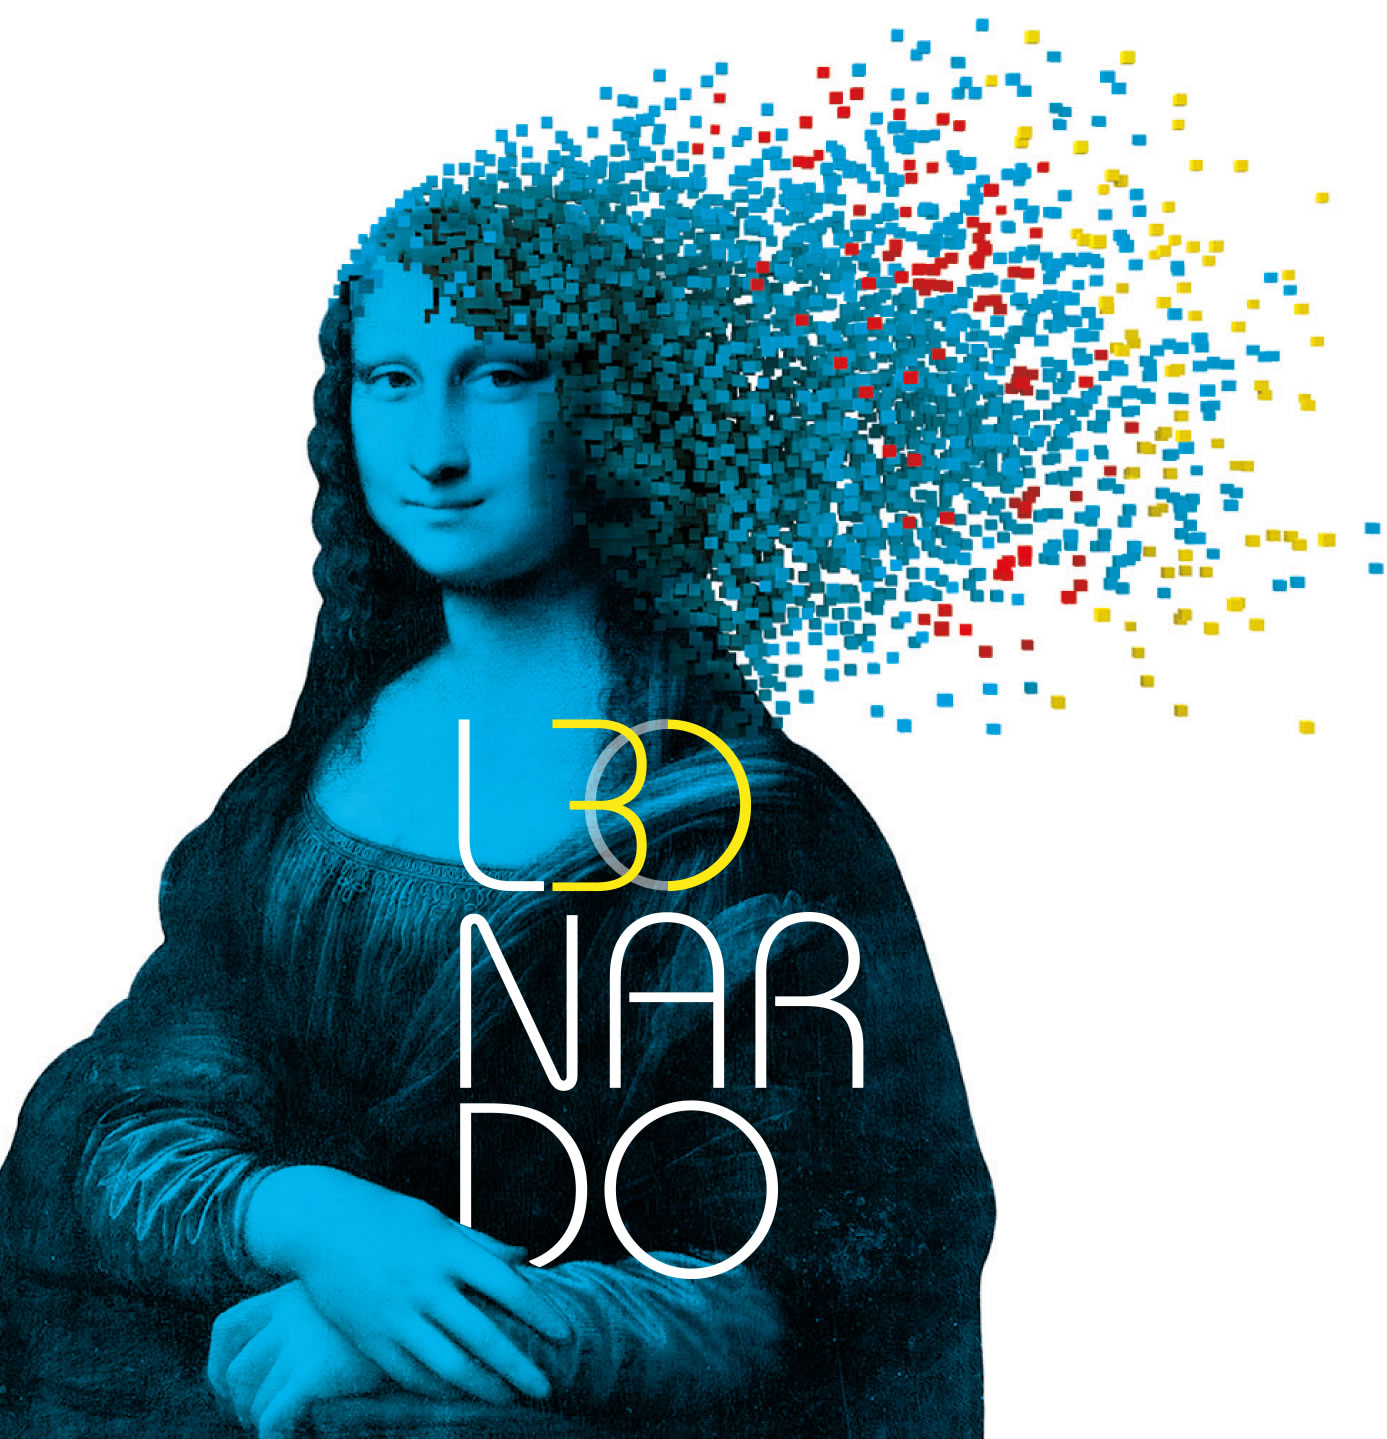 Leonardo 3D in mostra alla Fabbrica del Vapore, un genio così non si era mai visto